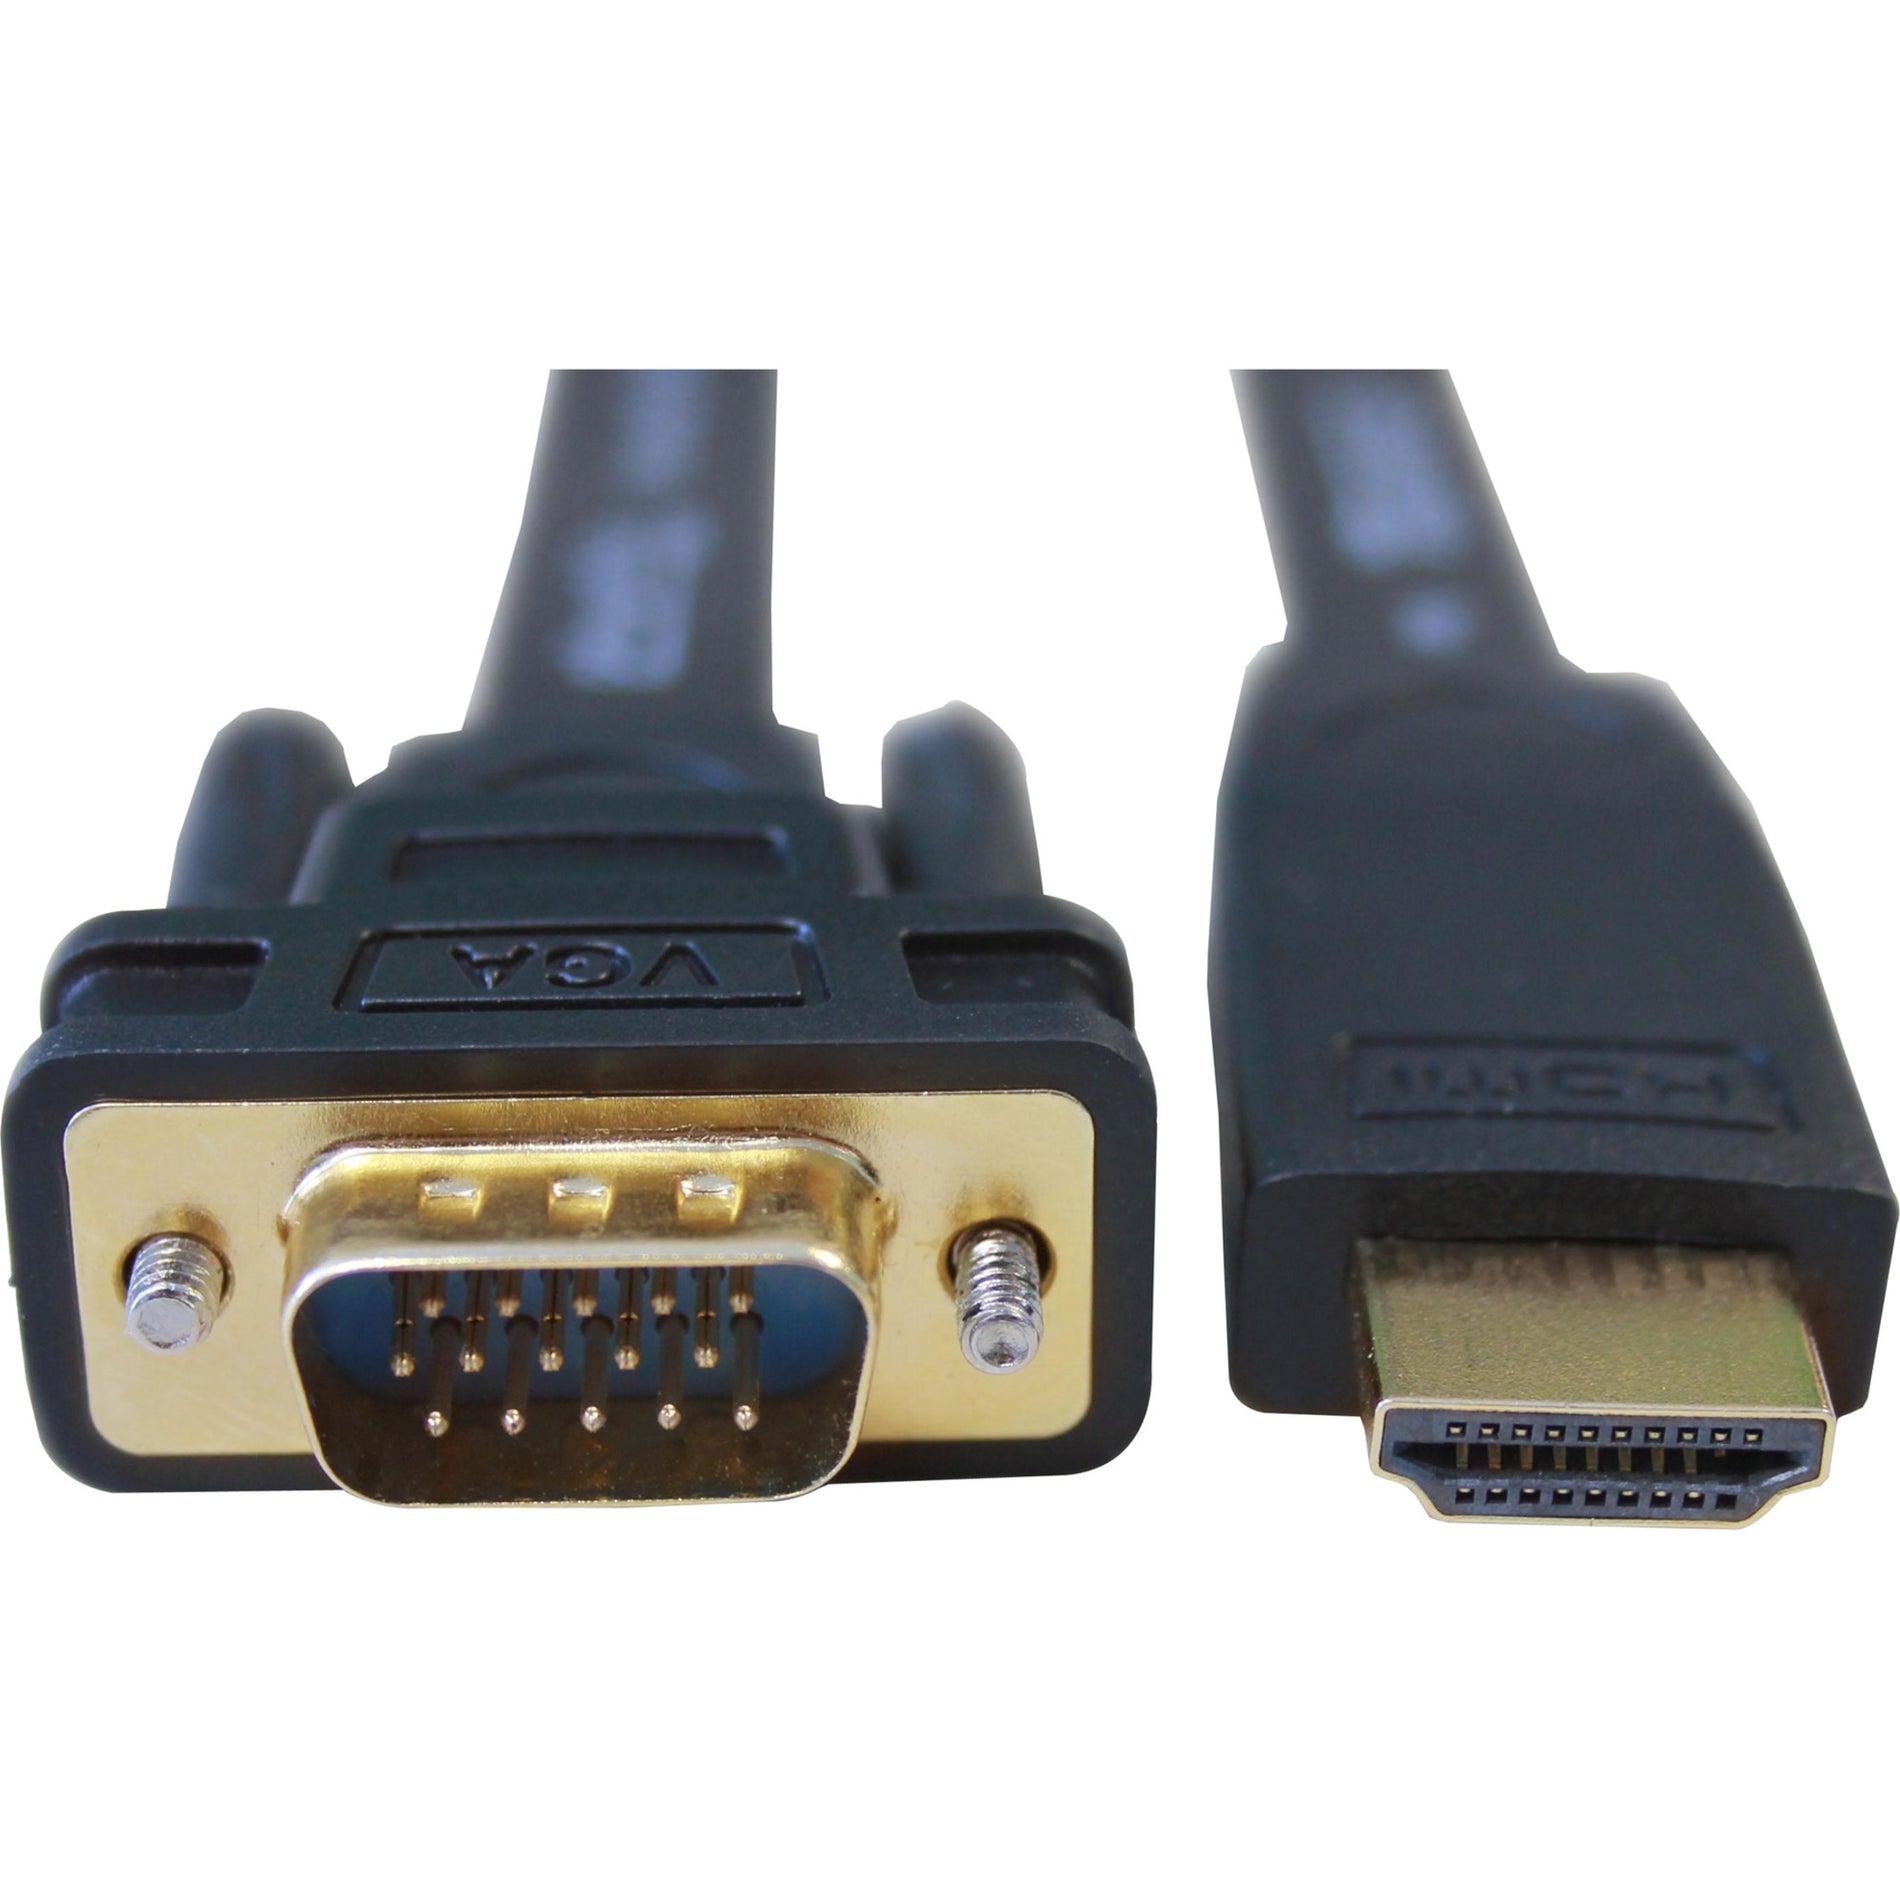 普莱格可 HDMI-VGA HDMI 到 VGA 主动适配器电缆，6英尺，支持 1920 x 1080 分辨率 普莱格可